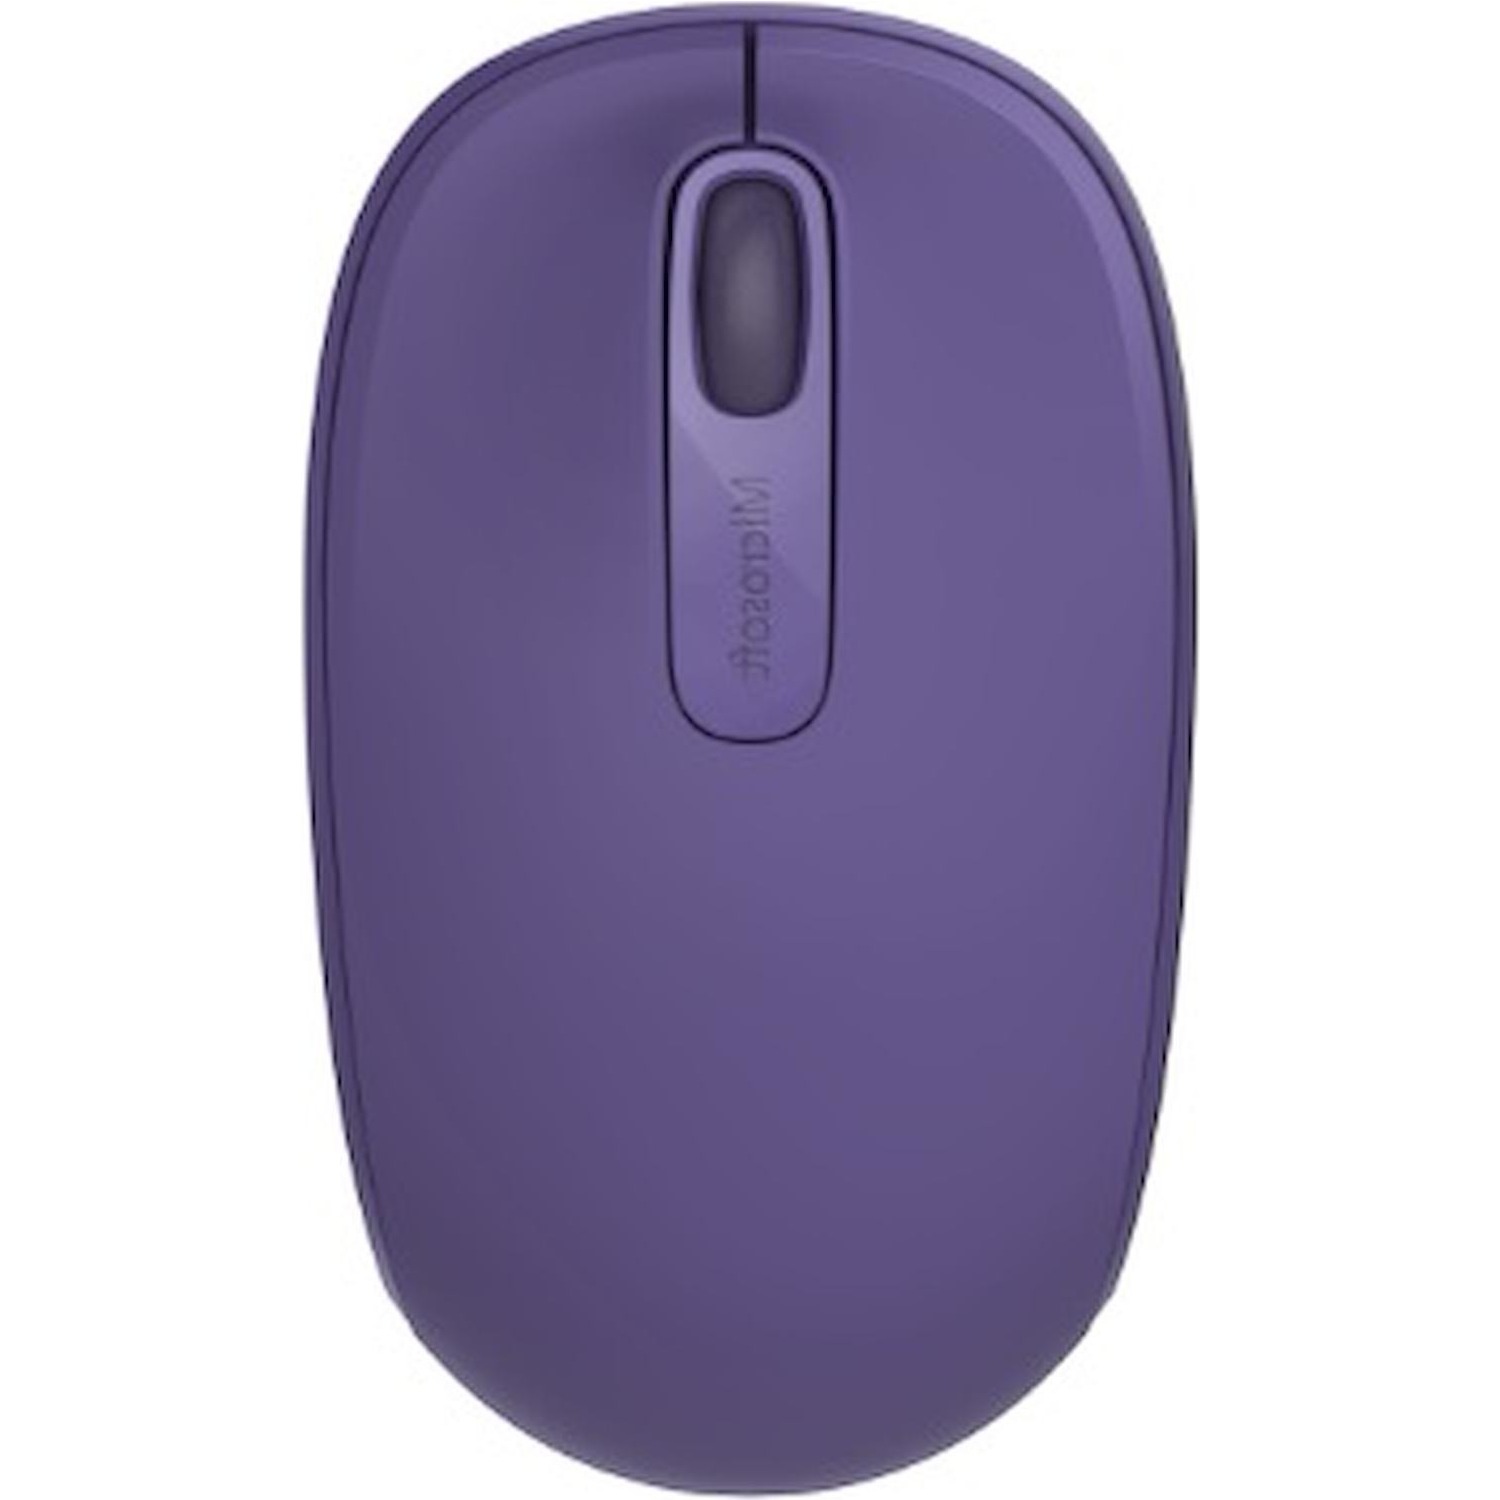 Immagine per Mouse Microsoft ottico wireless 1850 viola da DIMOStore